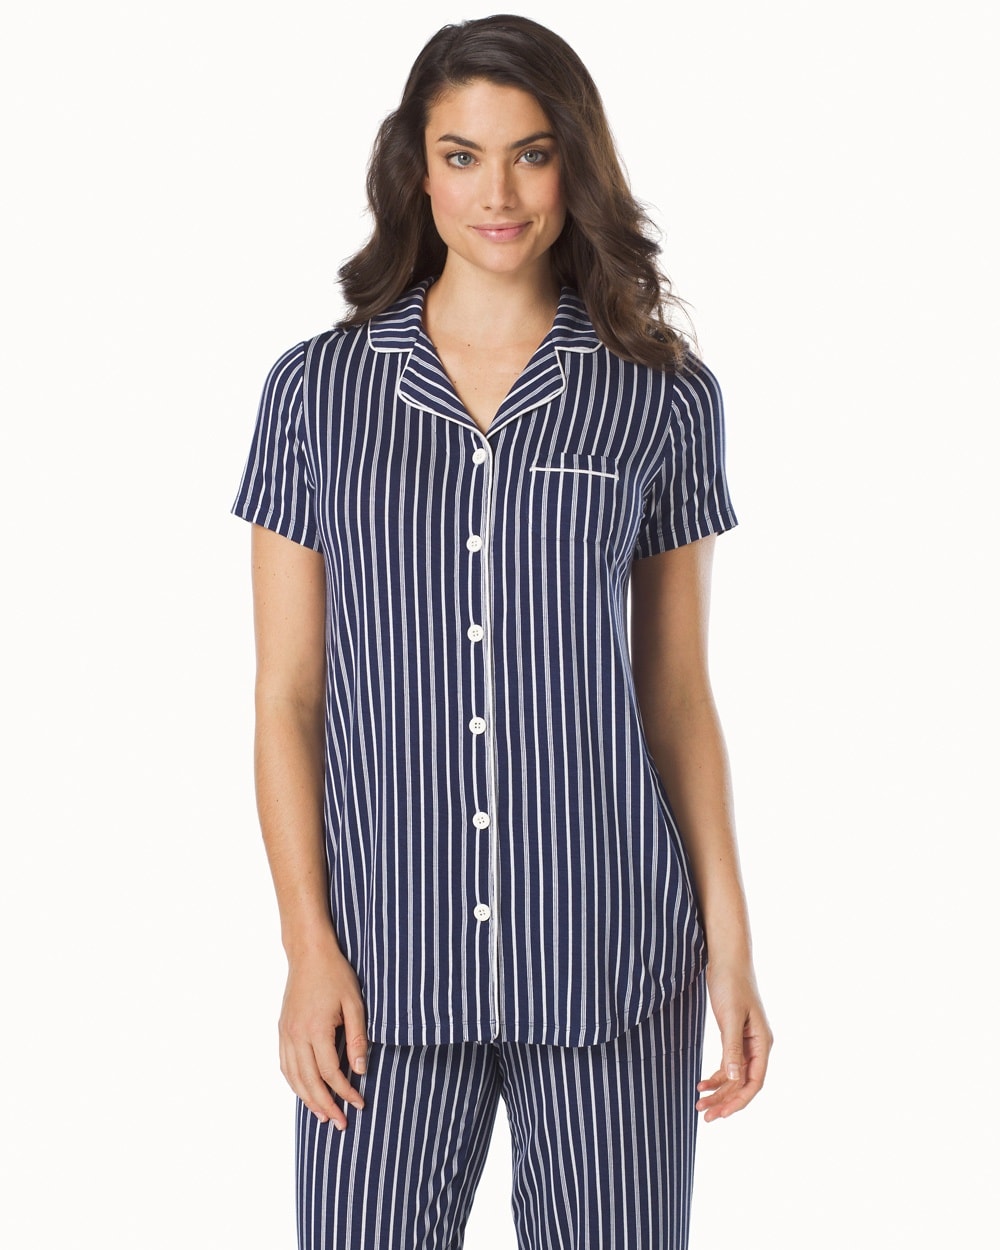 Embraceable Cool Nights Short Sleeve Pajama Top Regency Stripe Navy ...